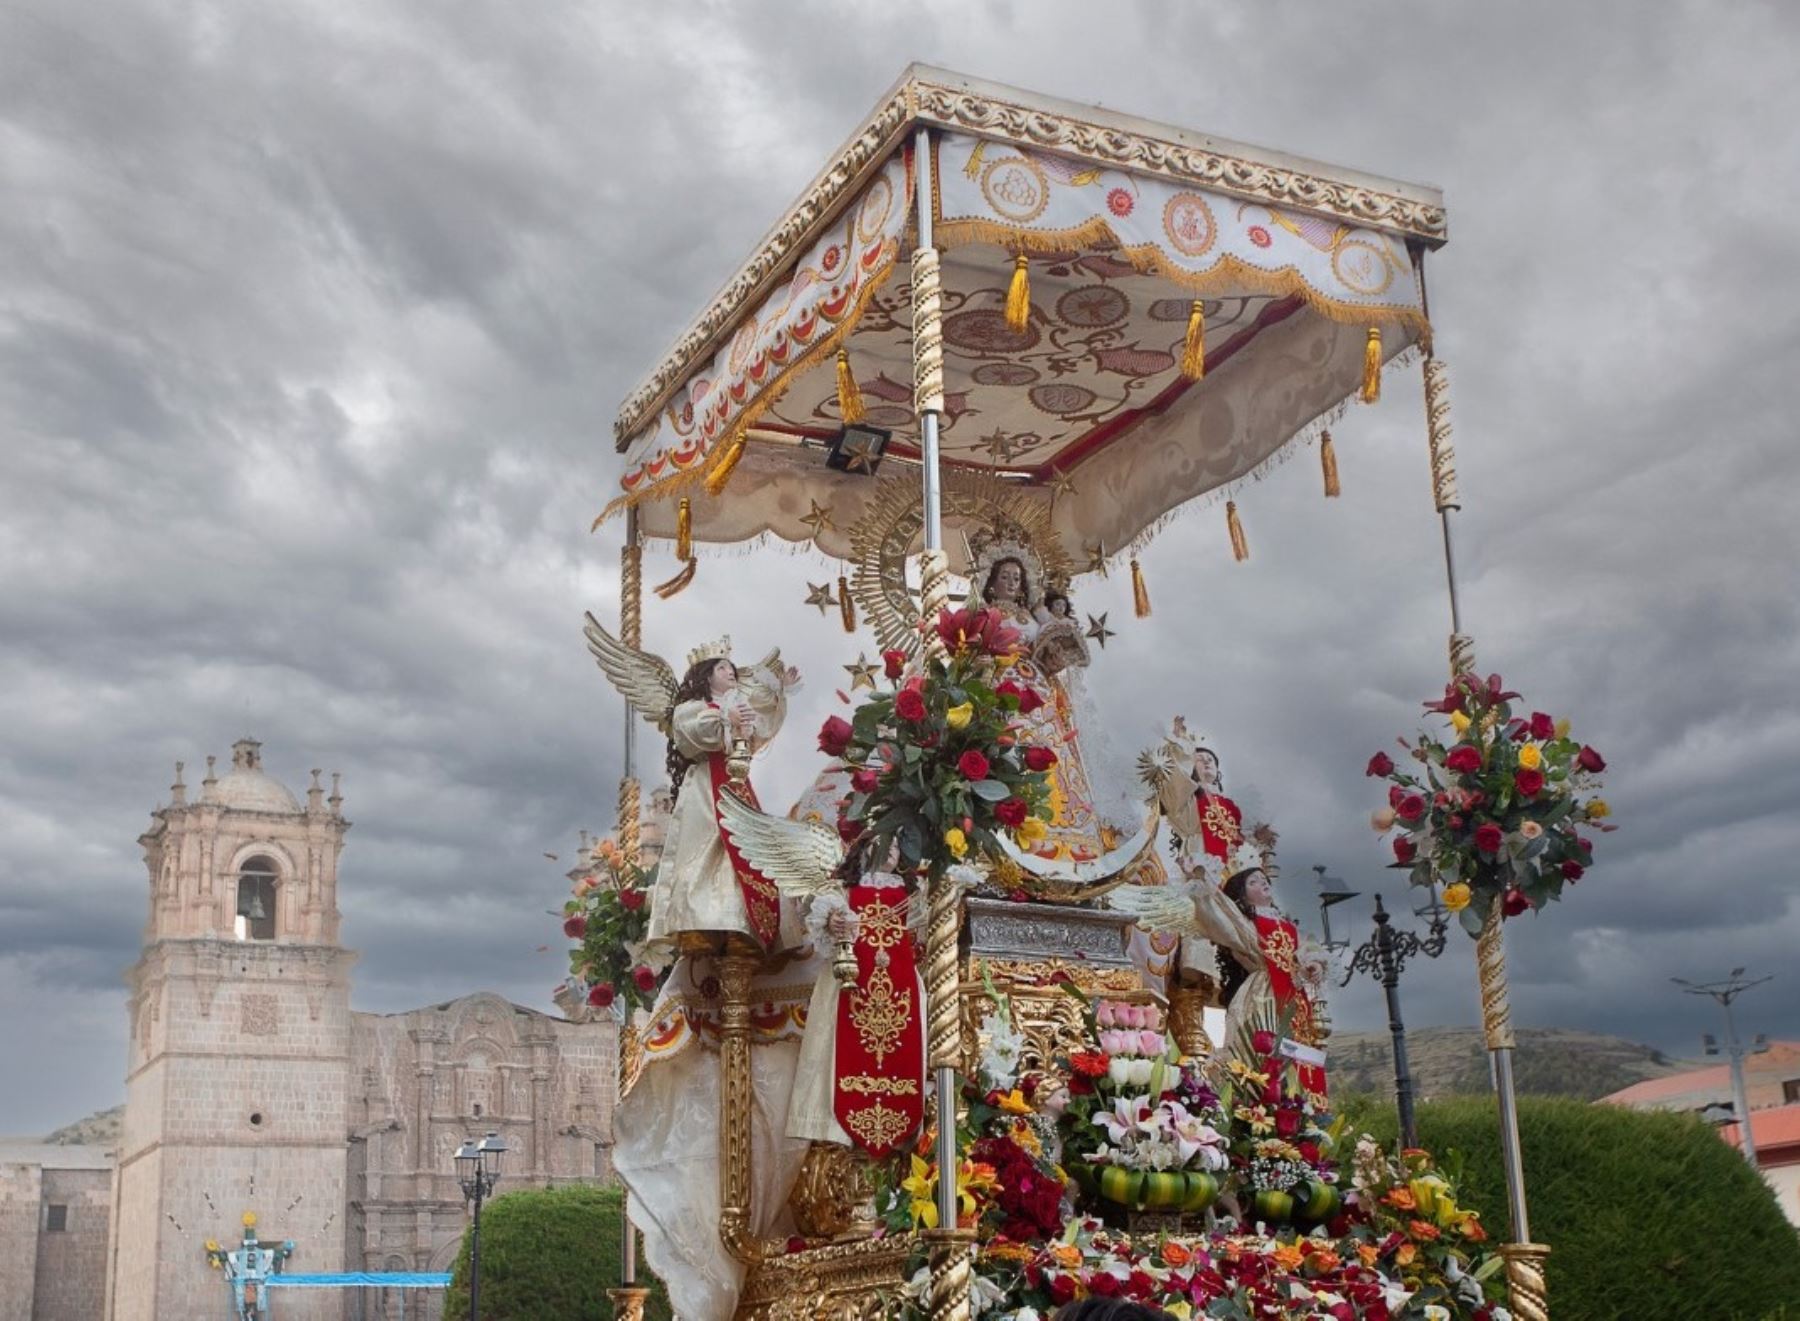 La Festividad de la Virgen de la Candelaria es una de las mayores celebraciones religiosa-culturales del Perú.